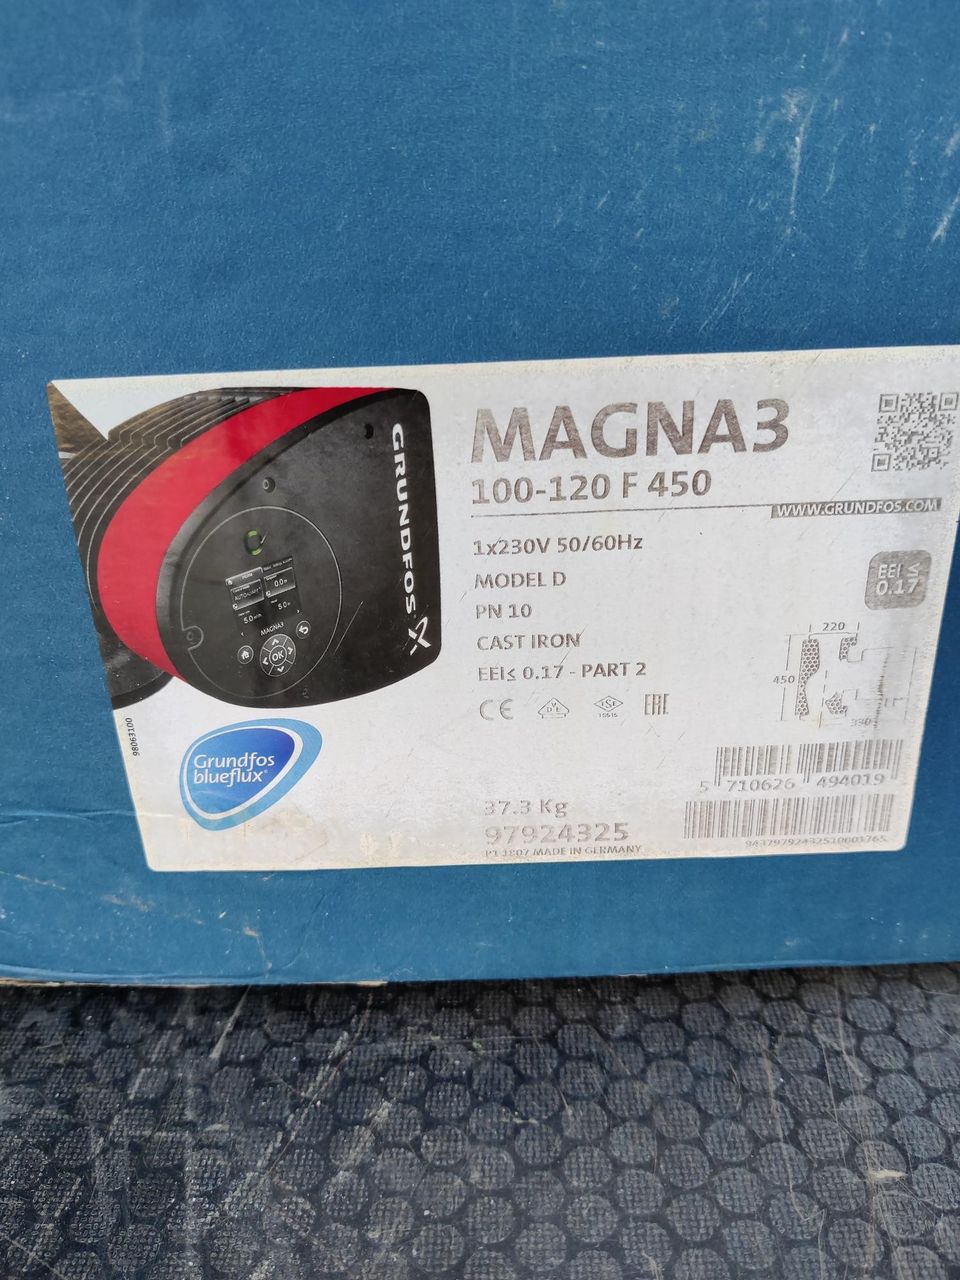 Grundfos magna3 100-120 f450